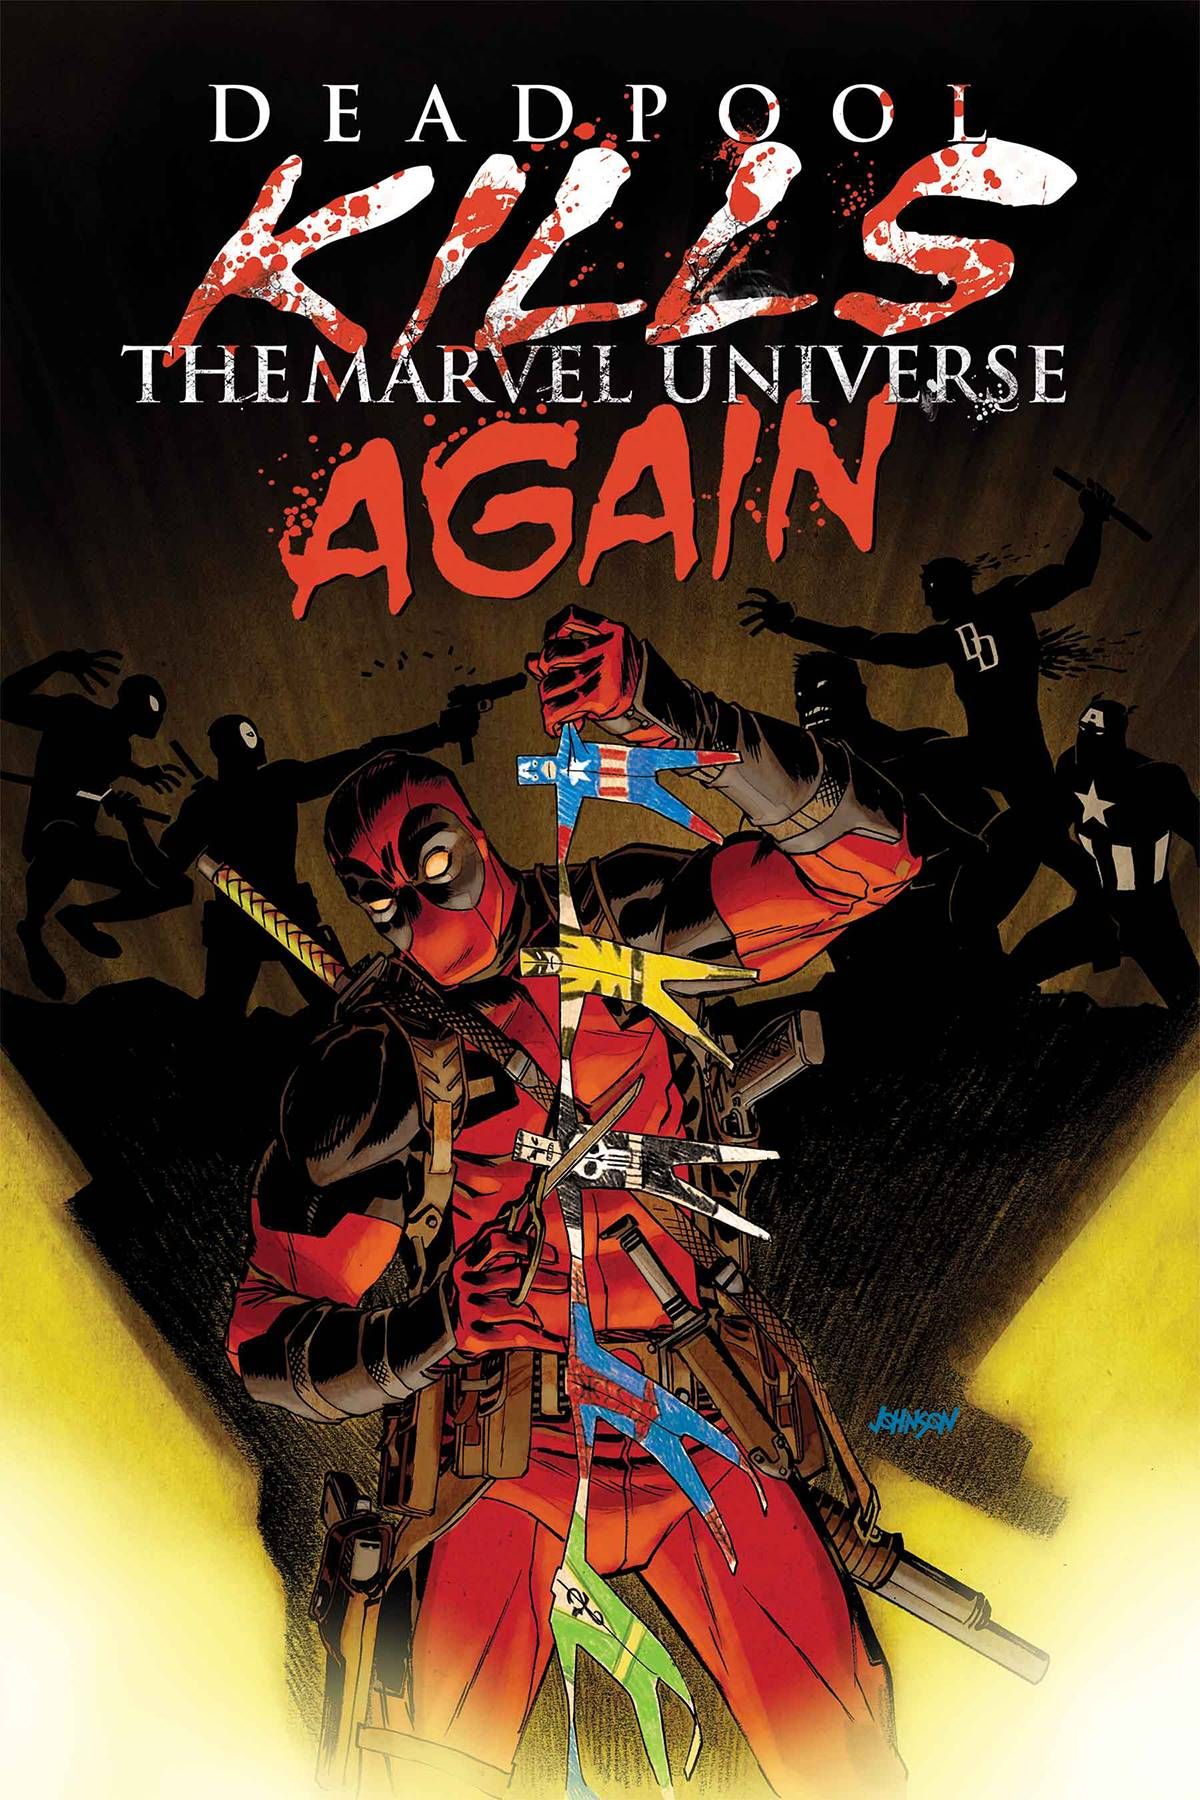 Deadpool Kills Marvel Universe Again #1 Comic